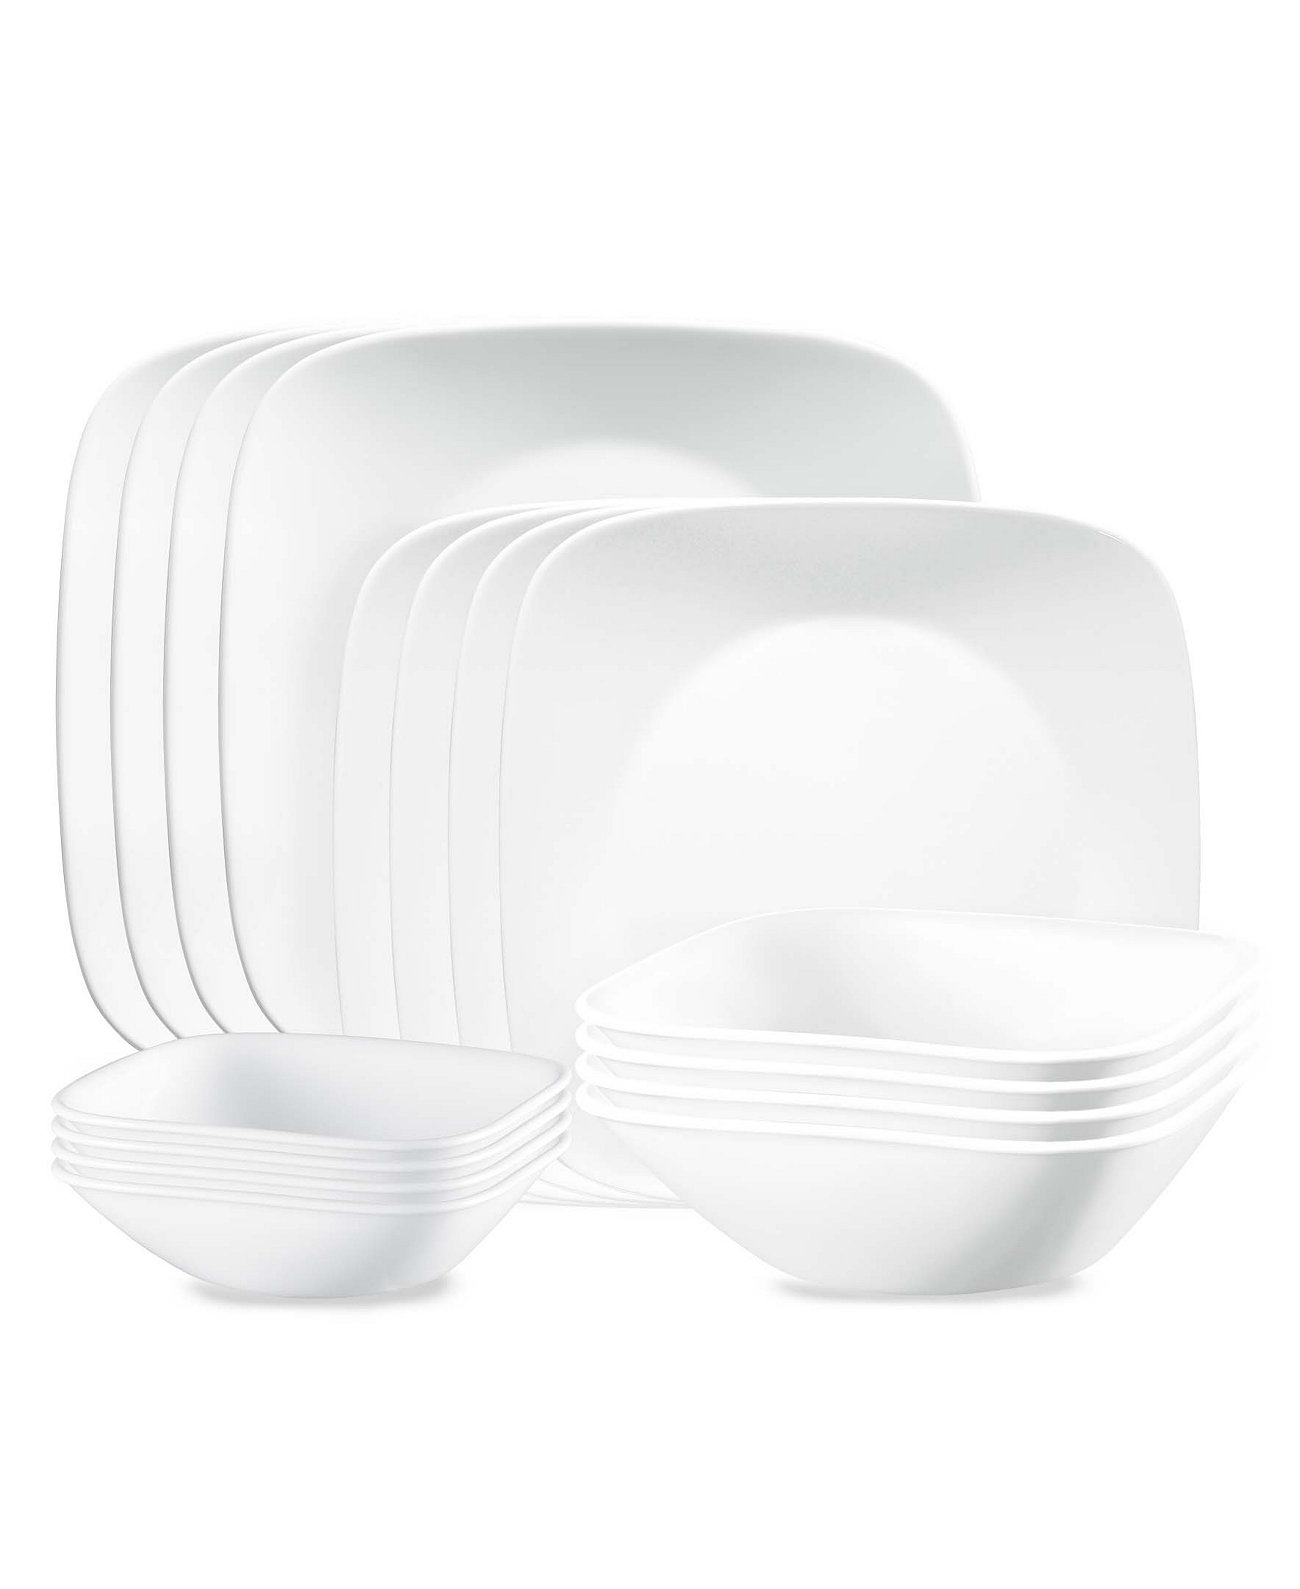 Набор столовой посуды Vivid White из 16 предметов, сервиз на 4 персоны Corelle